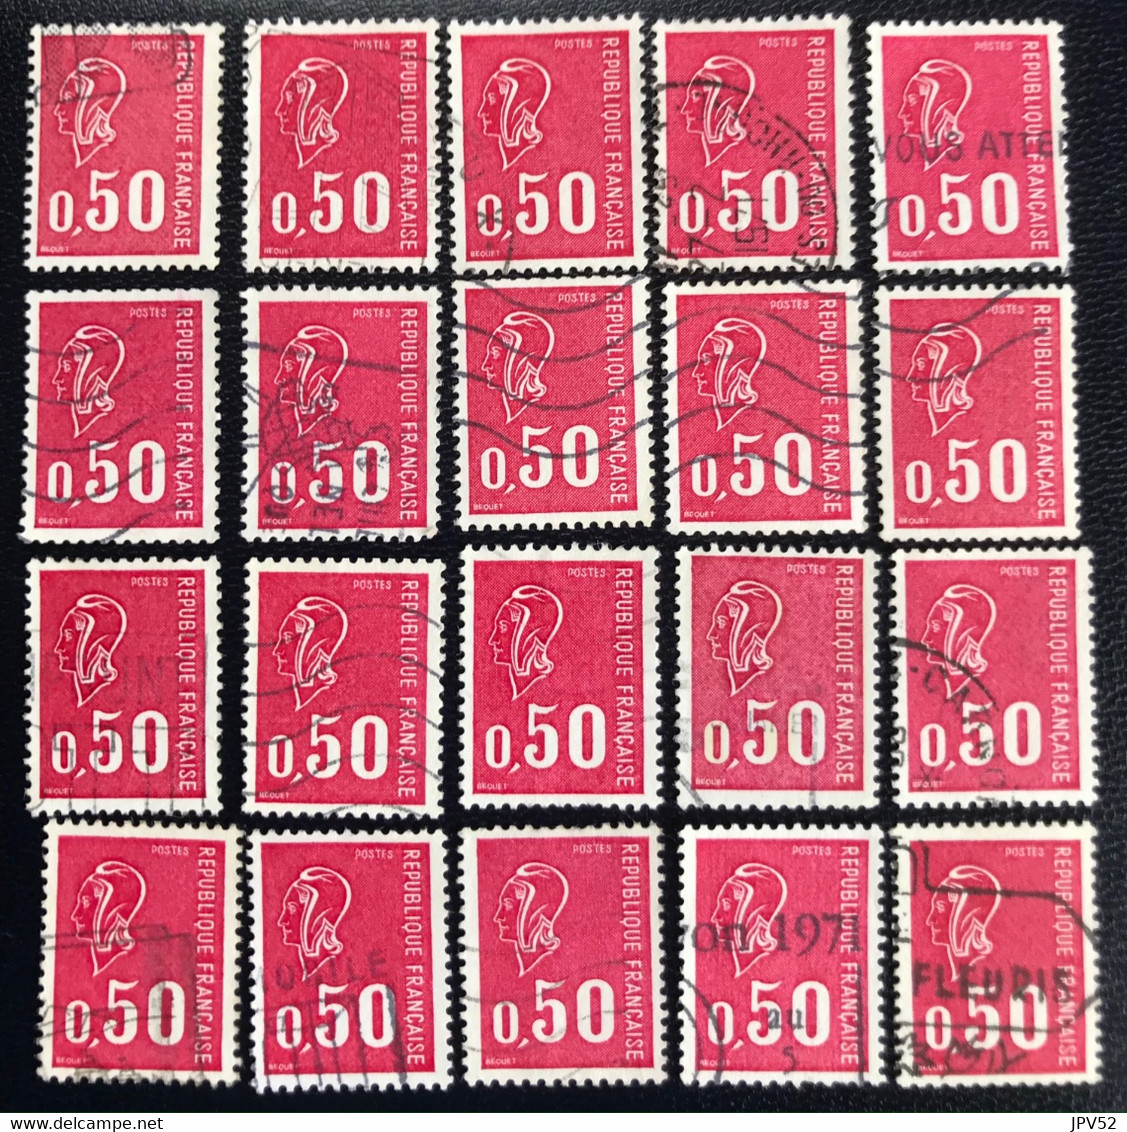 France - République Française - W1/19 - (°)used - 1971 - Michel 1735x - Marianne - 20x - Collections